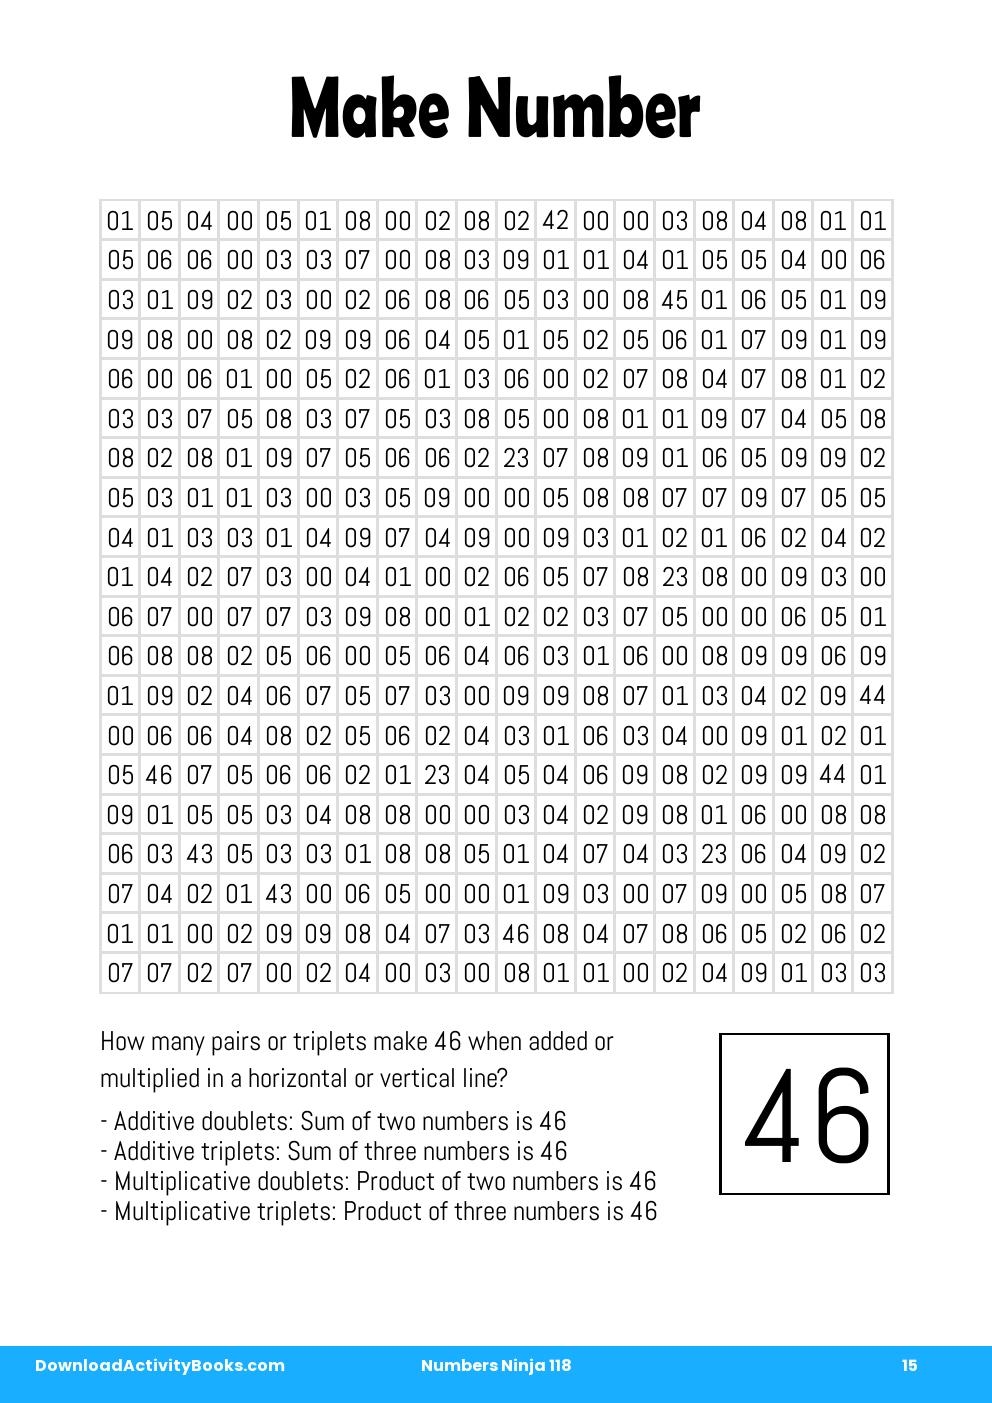 Make Number in Numbers Ninja 118